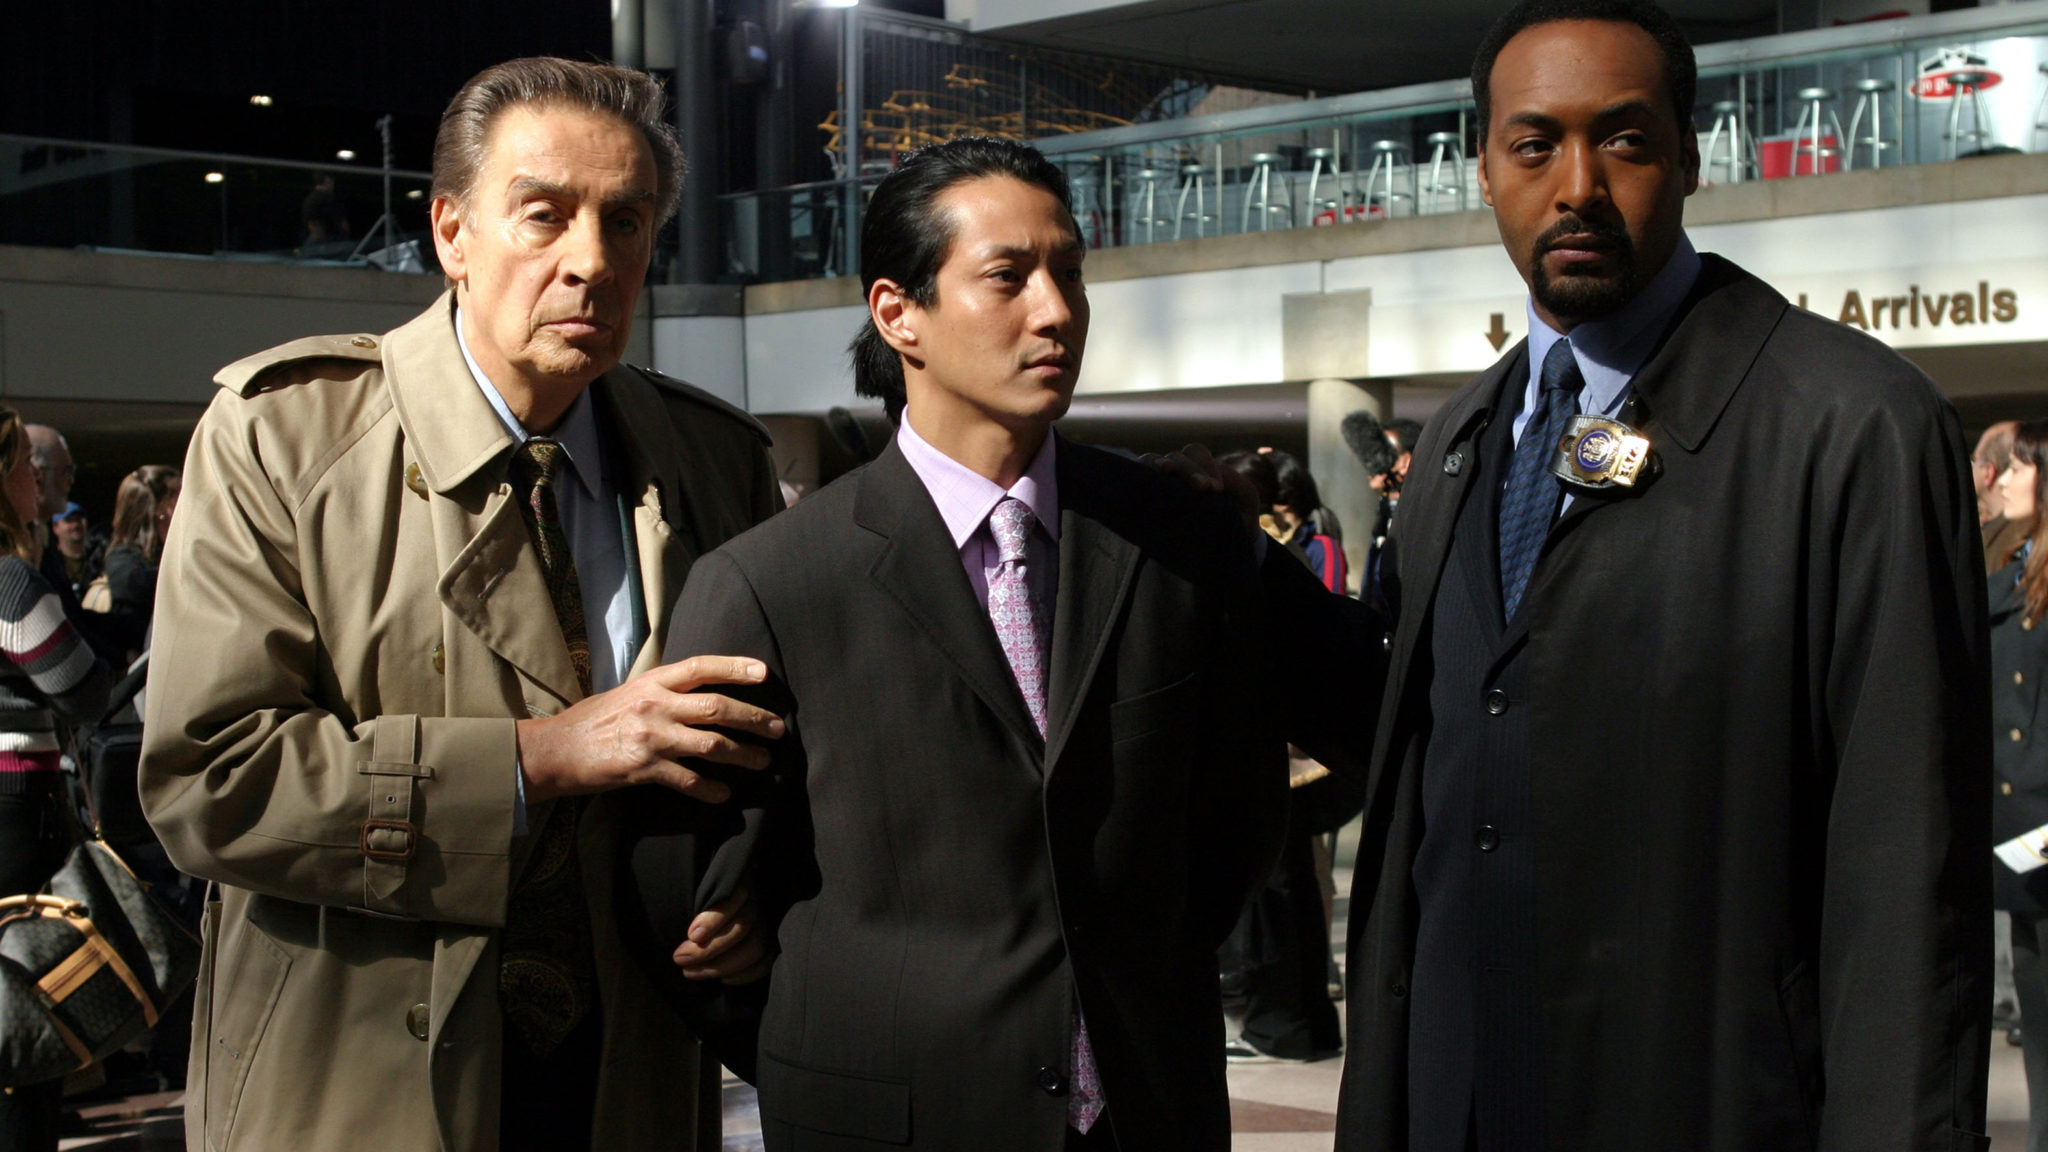 Law Order: Season Finale Full Episode Watch Online ON NBC Network